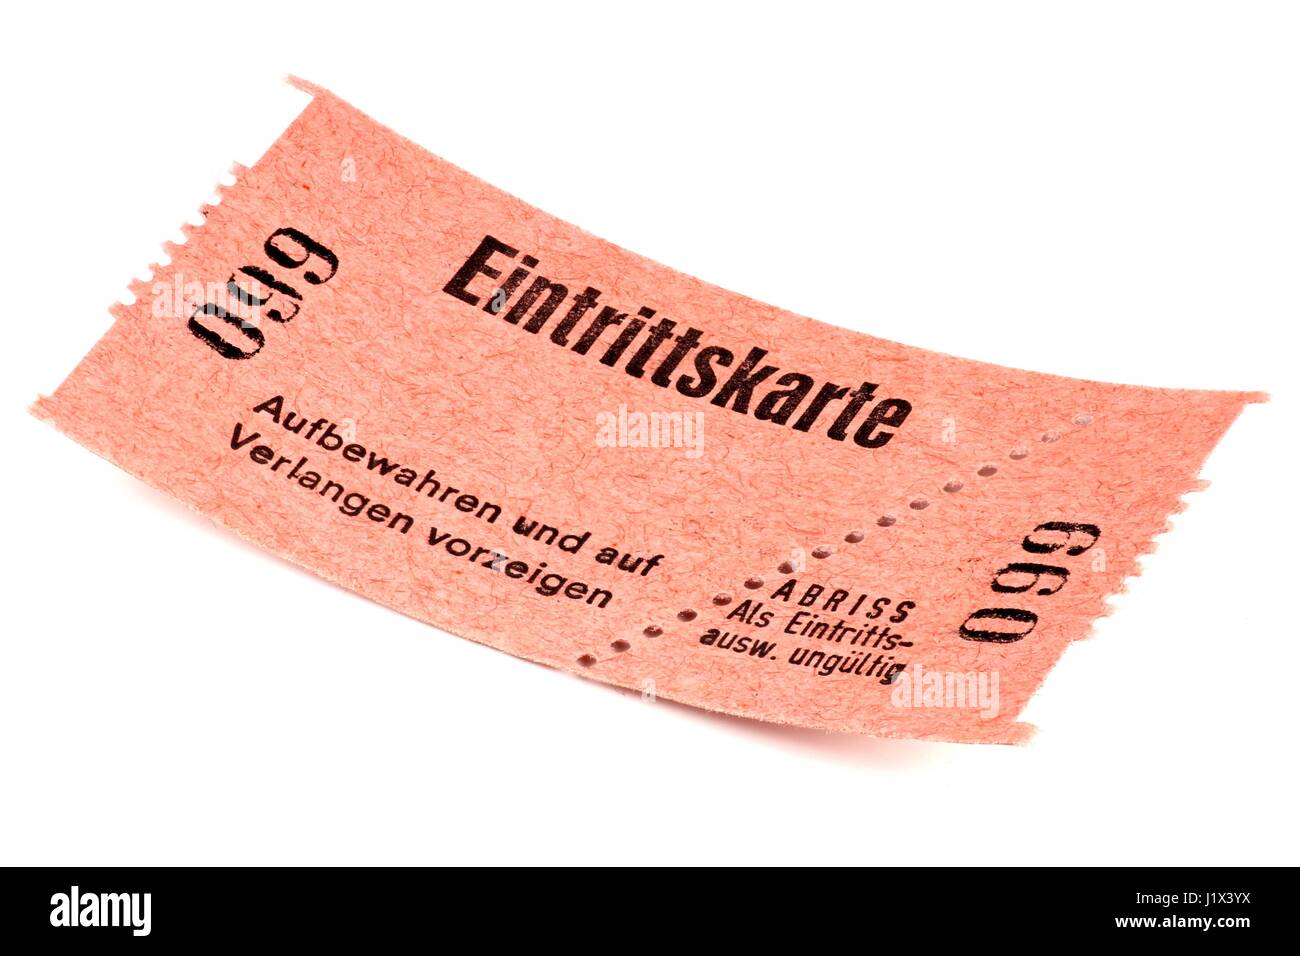 Billet d'admission allemand isolé sur fond blanc Banque D'Images